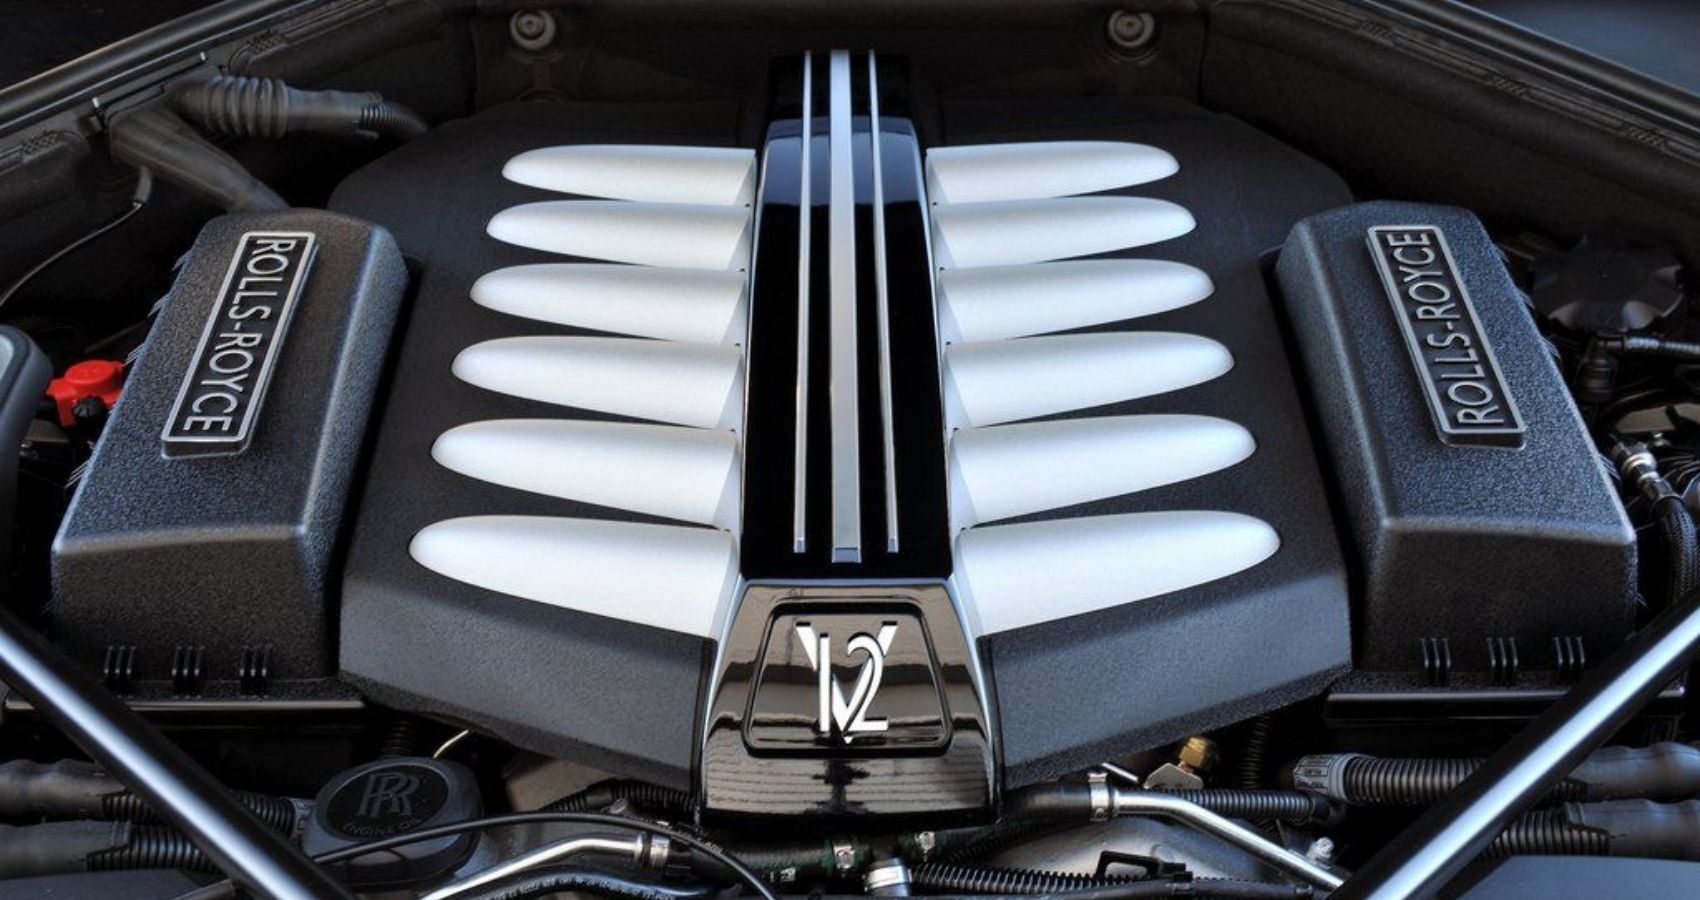 Rolls-Royce 6.75-liter V12 engine in Phantom VIII